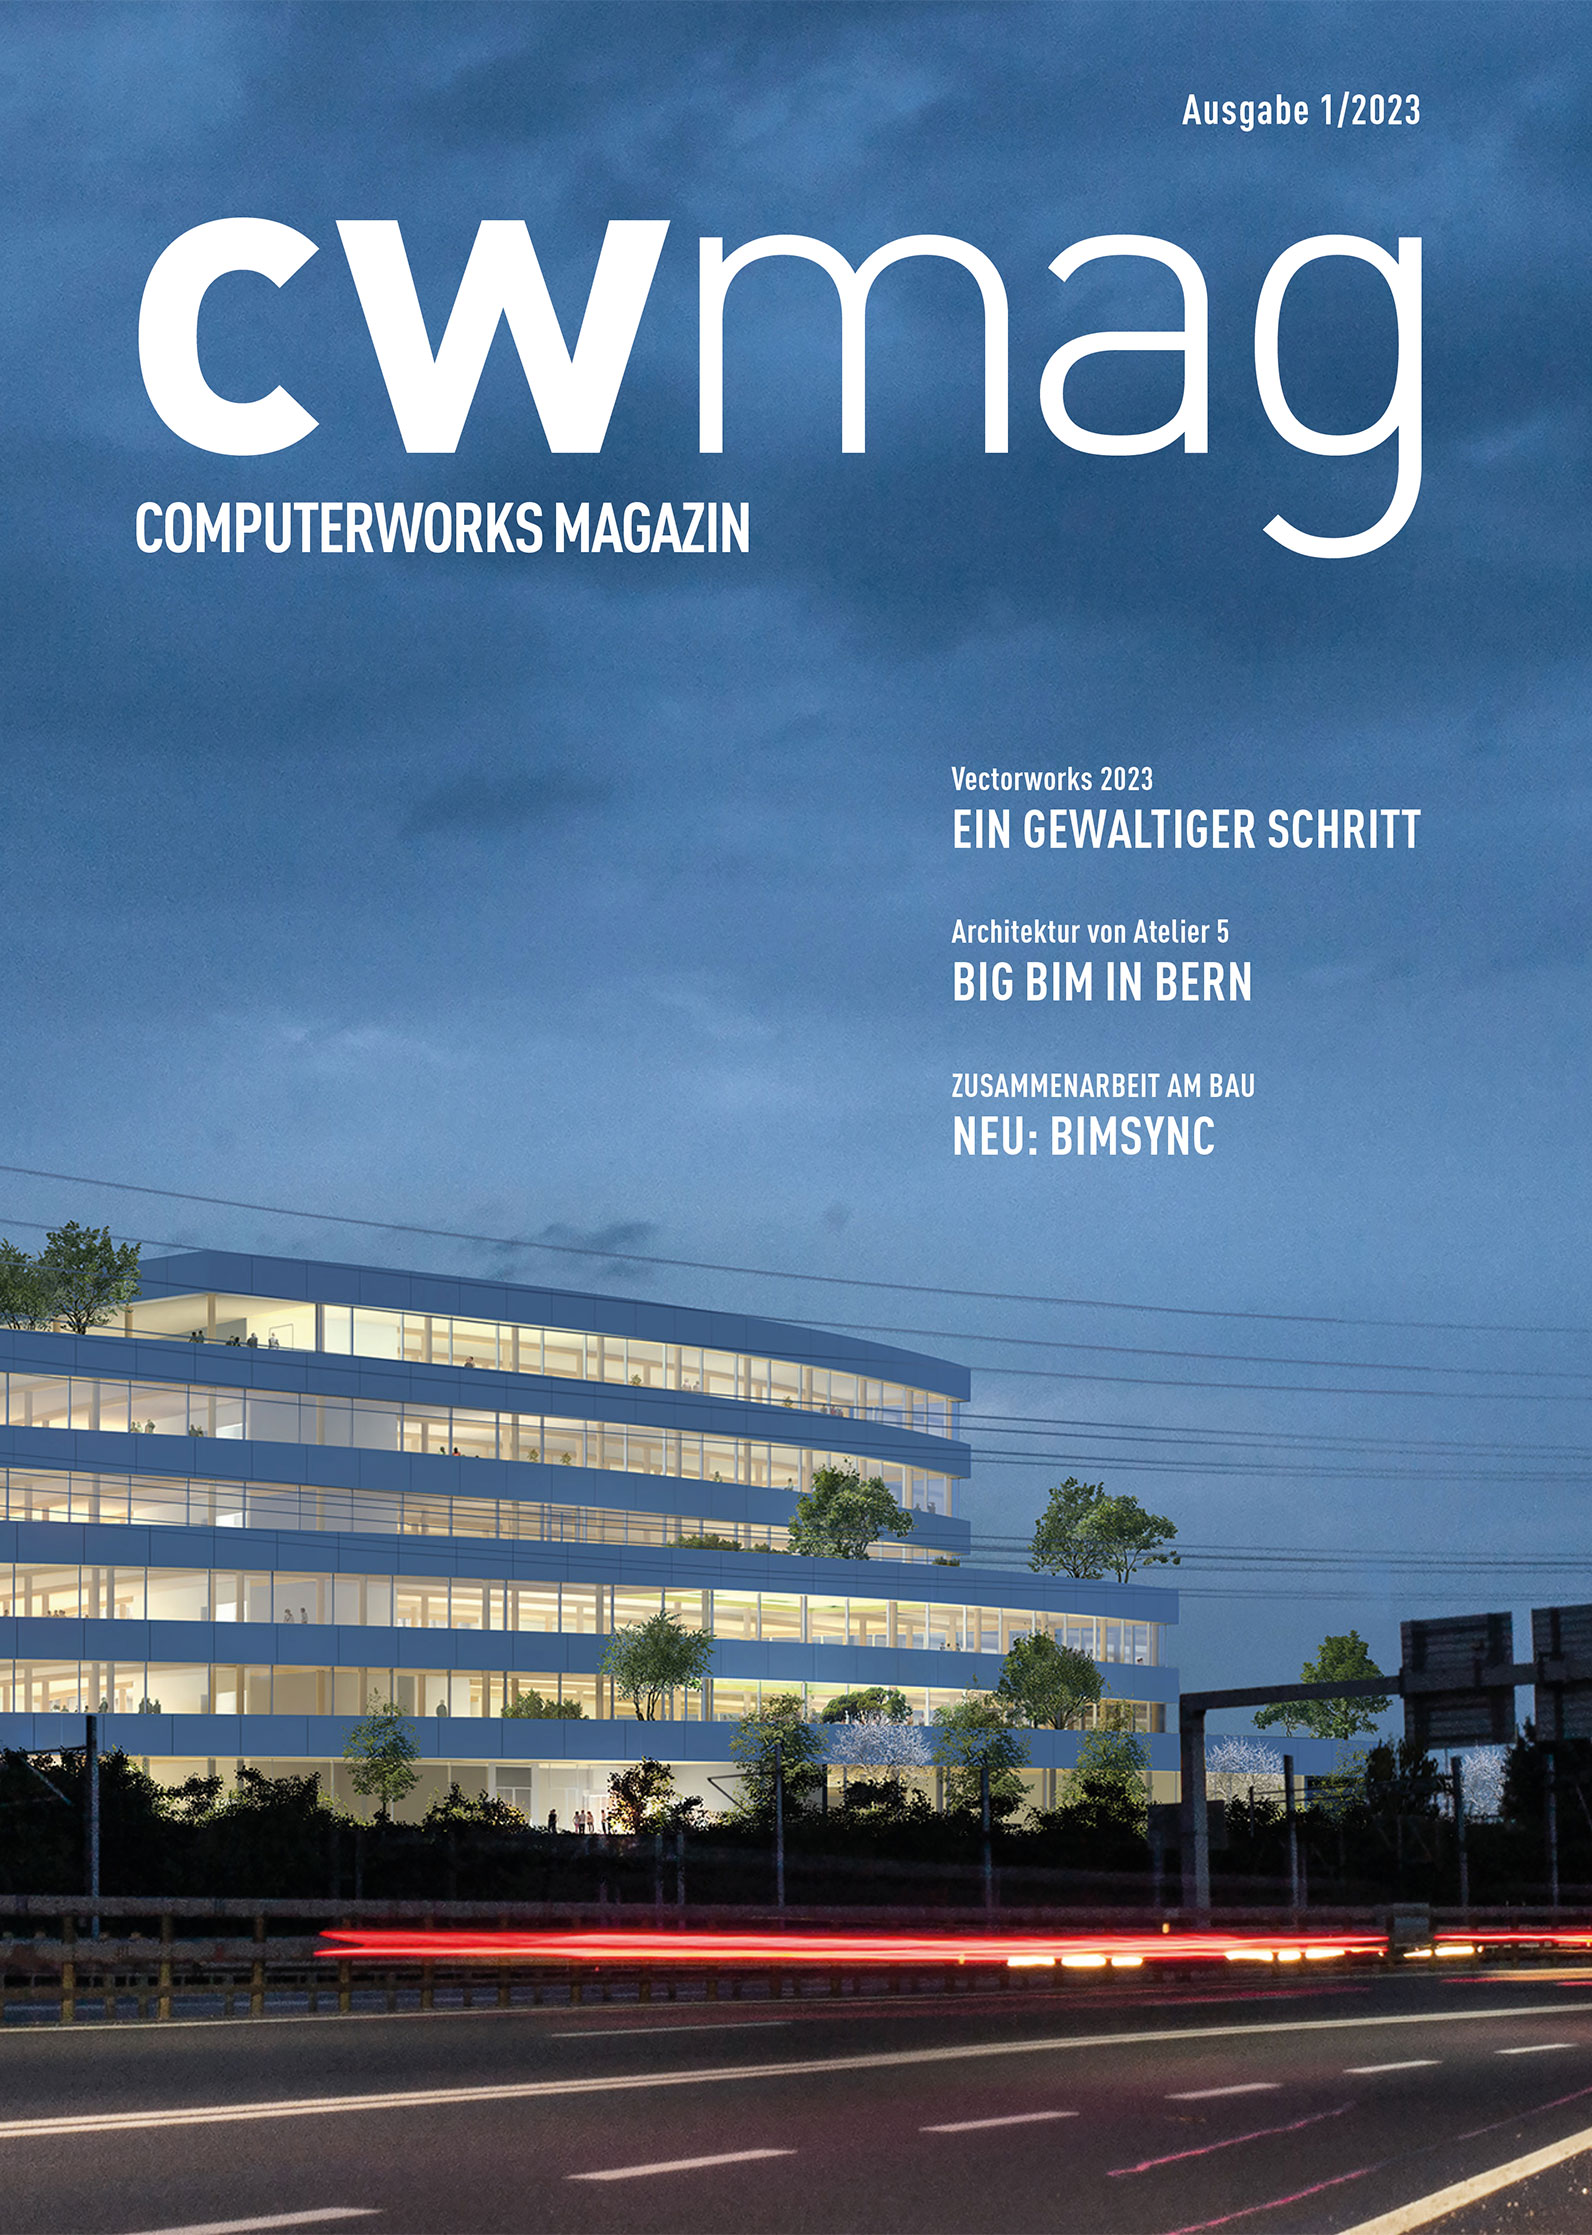 cwmag ComputerWorks Magazin -Ausgabe 01/2023